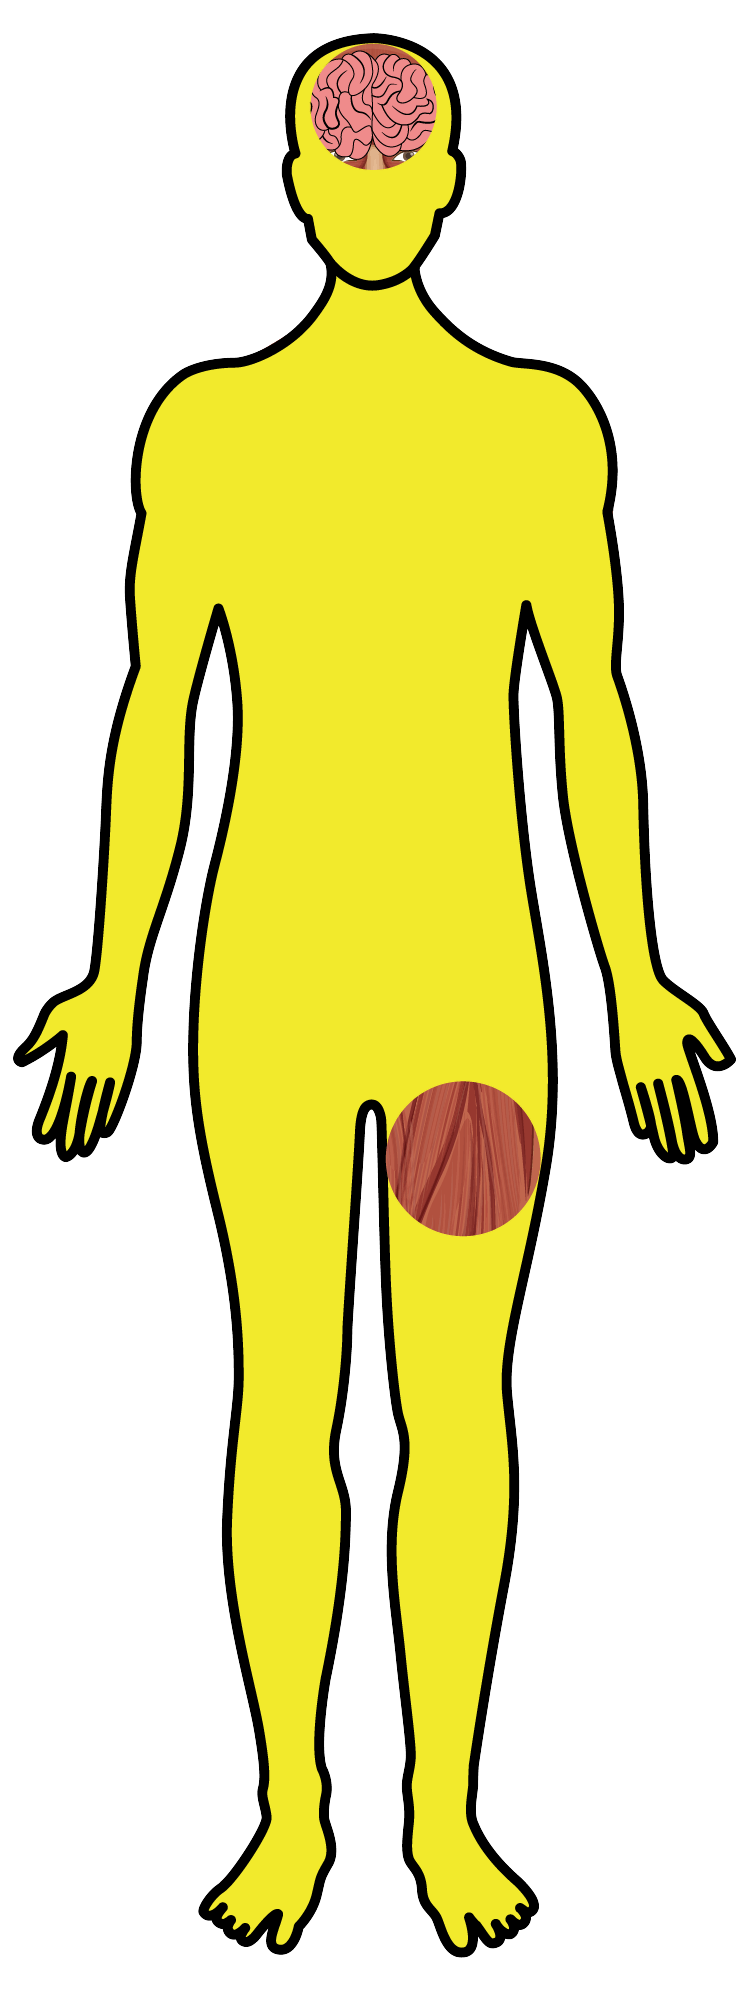 Toxoplasmose - Desenho corpo